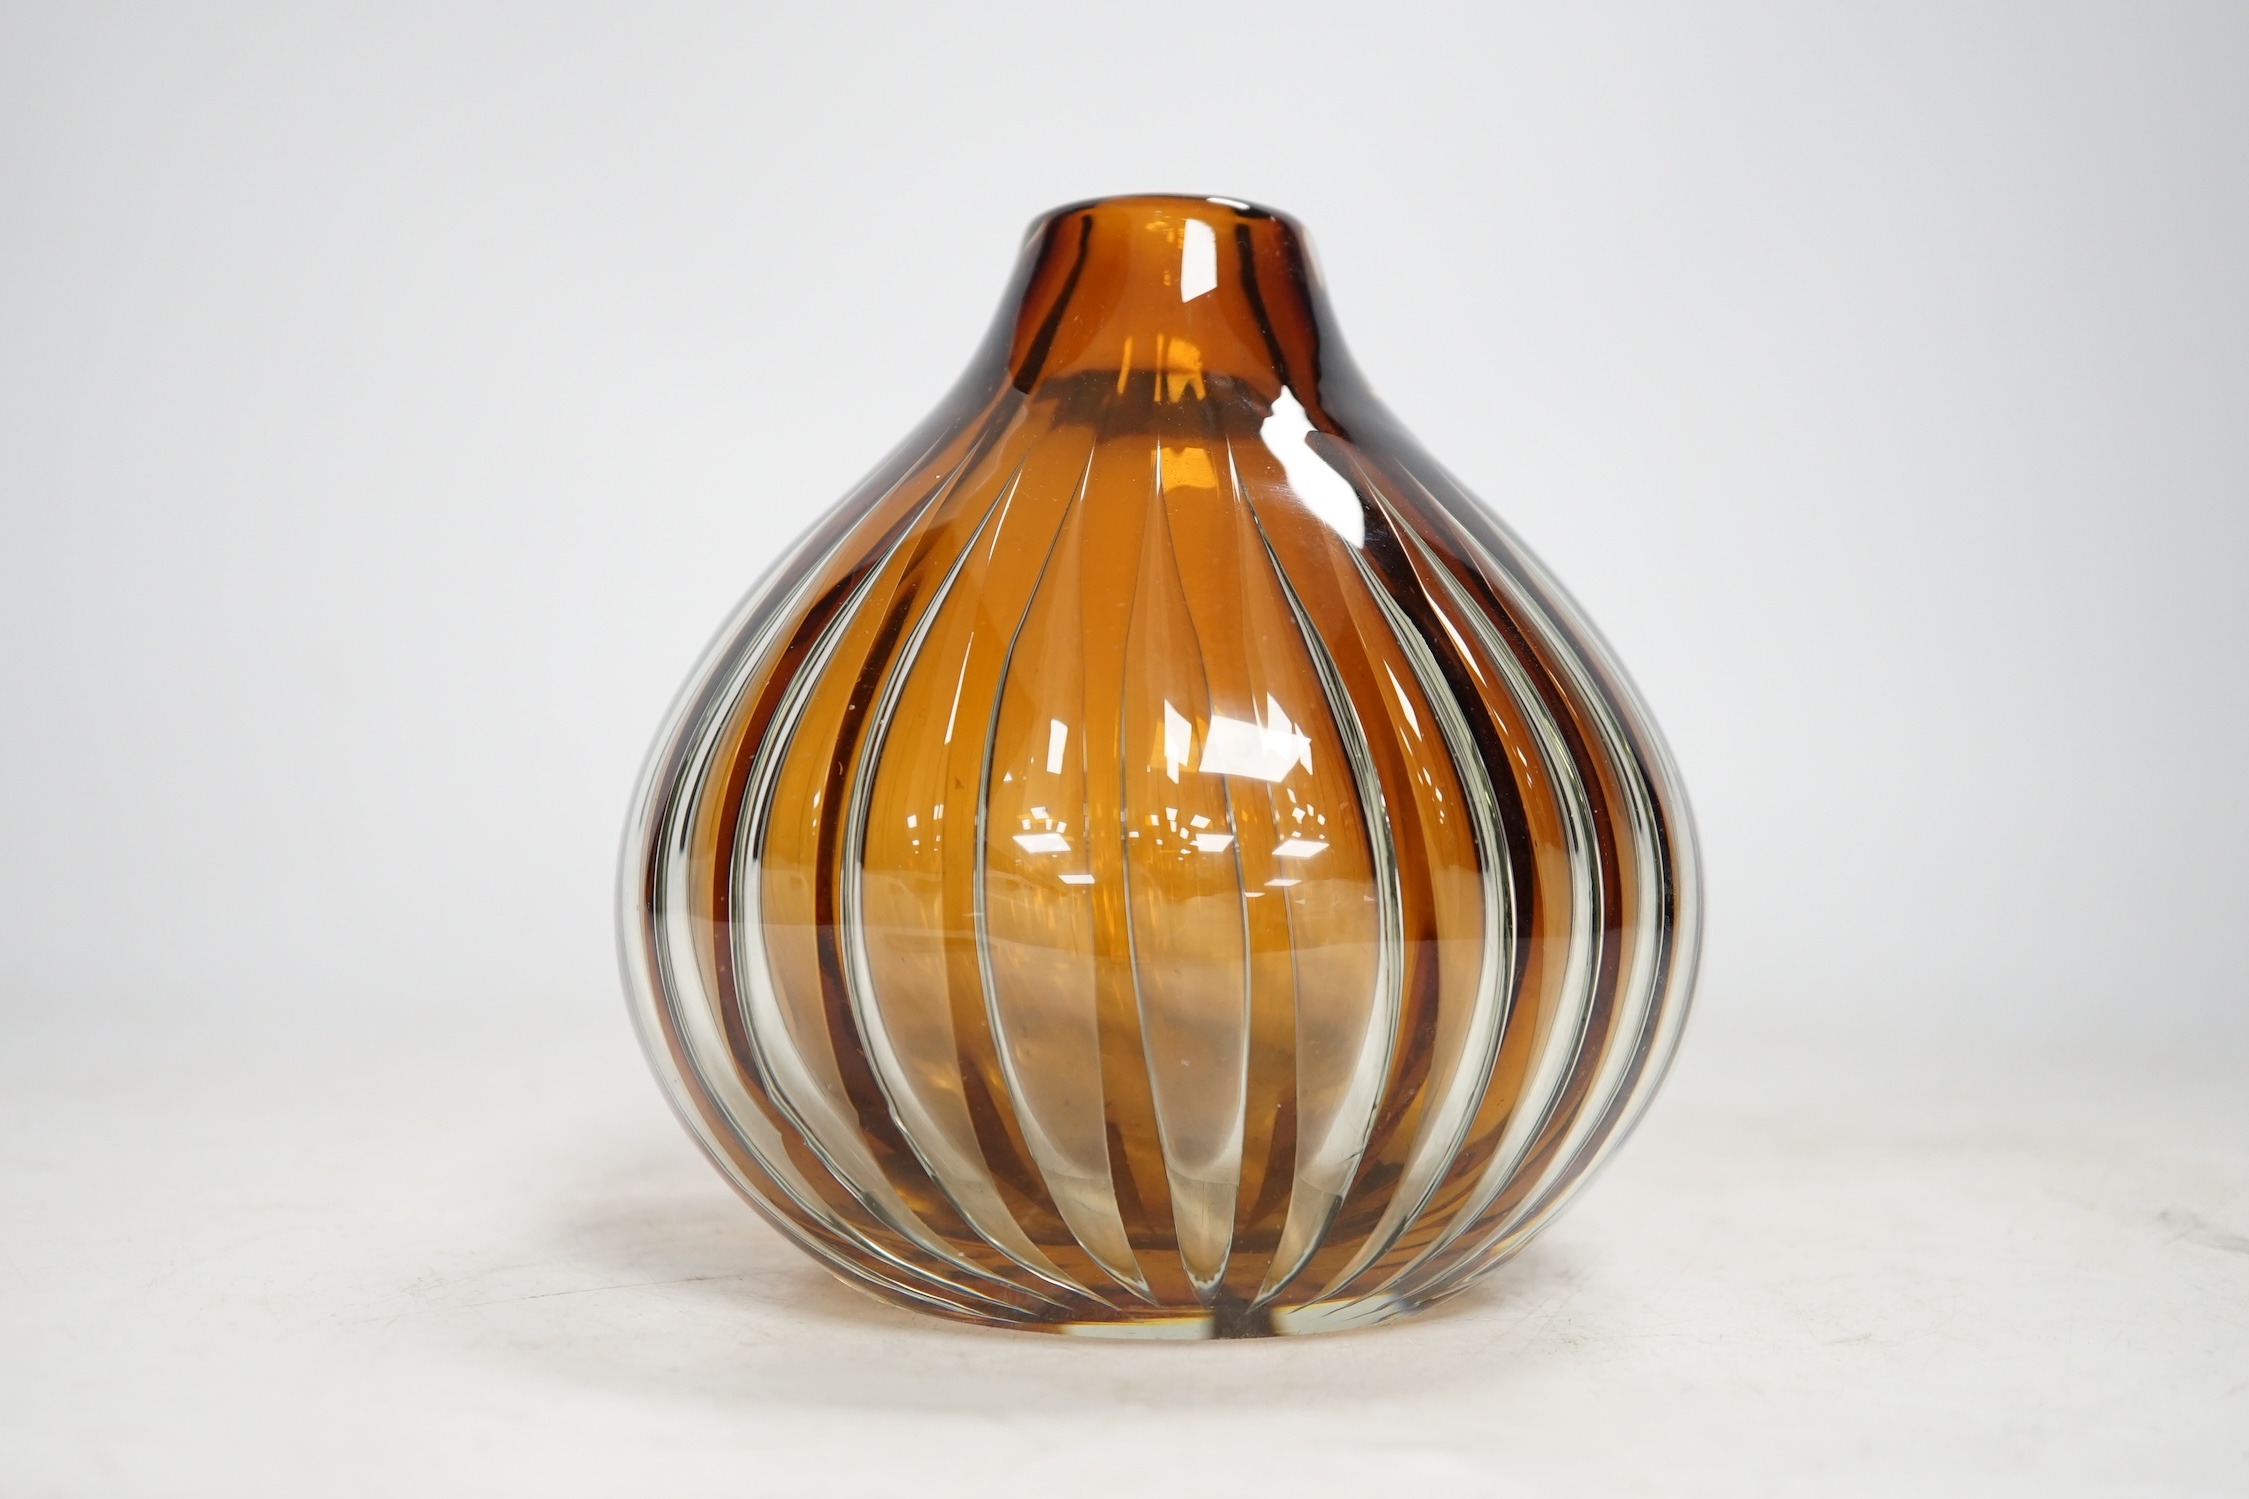 Kaj Franck for Nuutajarvi Notsjo, an art glass vase, signed to base, 14cm high. Condition - good